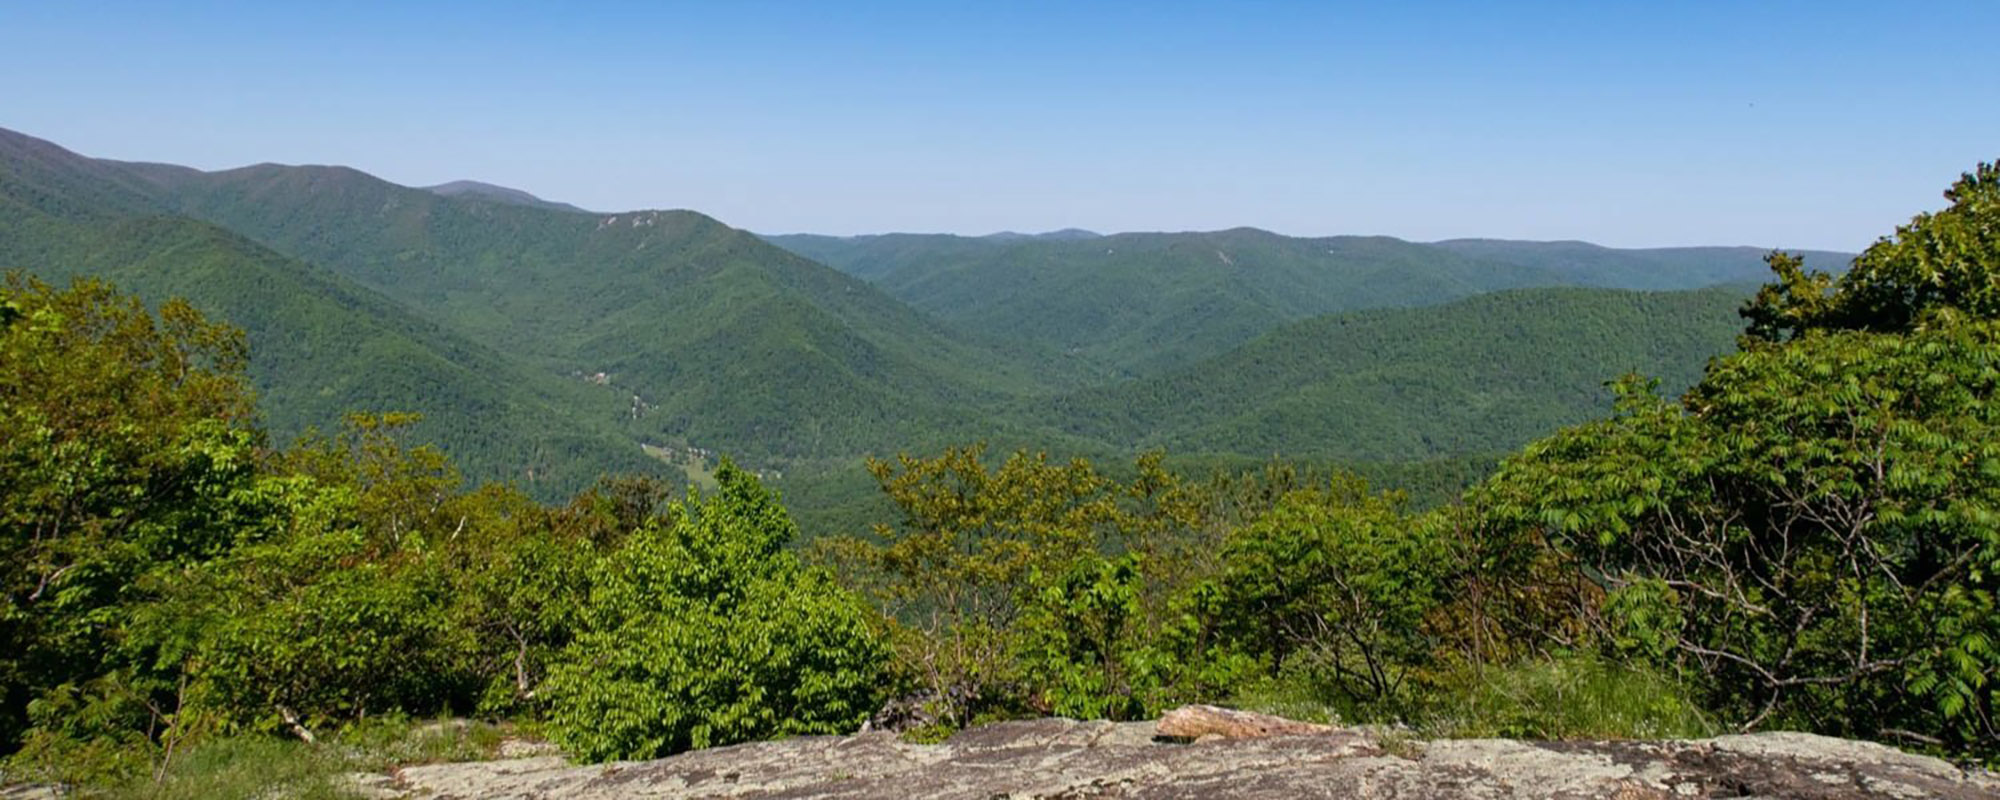 View of the Three Ridges mountains